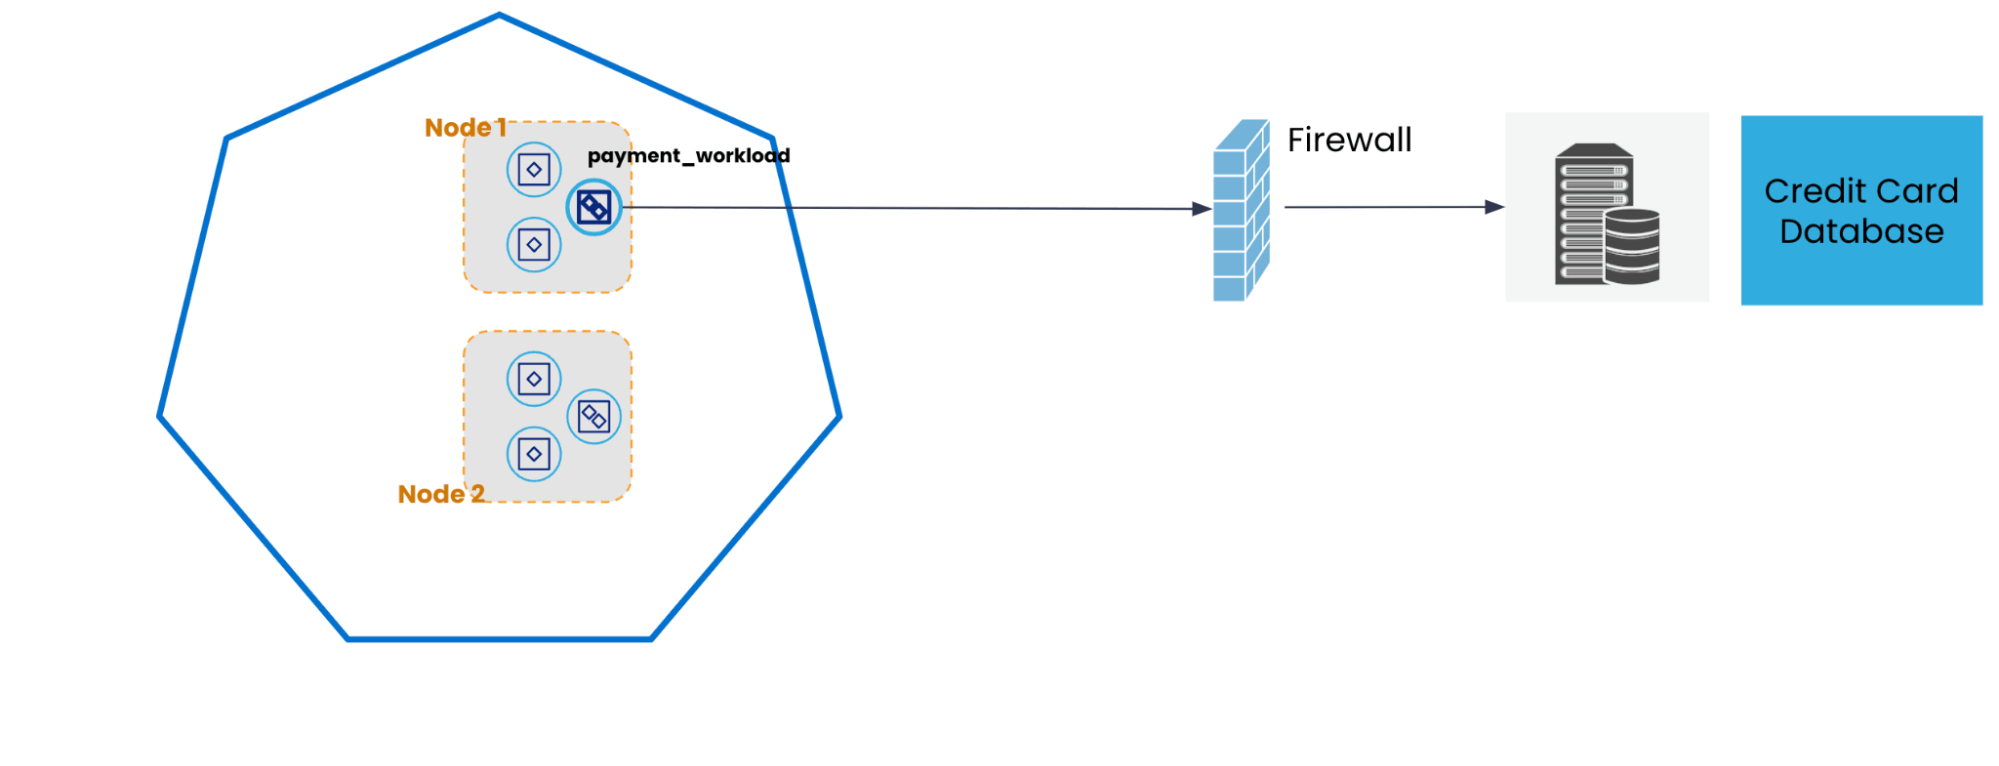 Figura 1: Estabelecendo conectividade payment_workload com um banco de dados de cartão de crédito atrás de um firewall